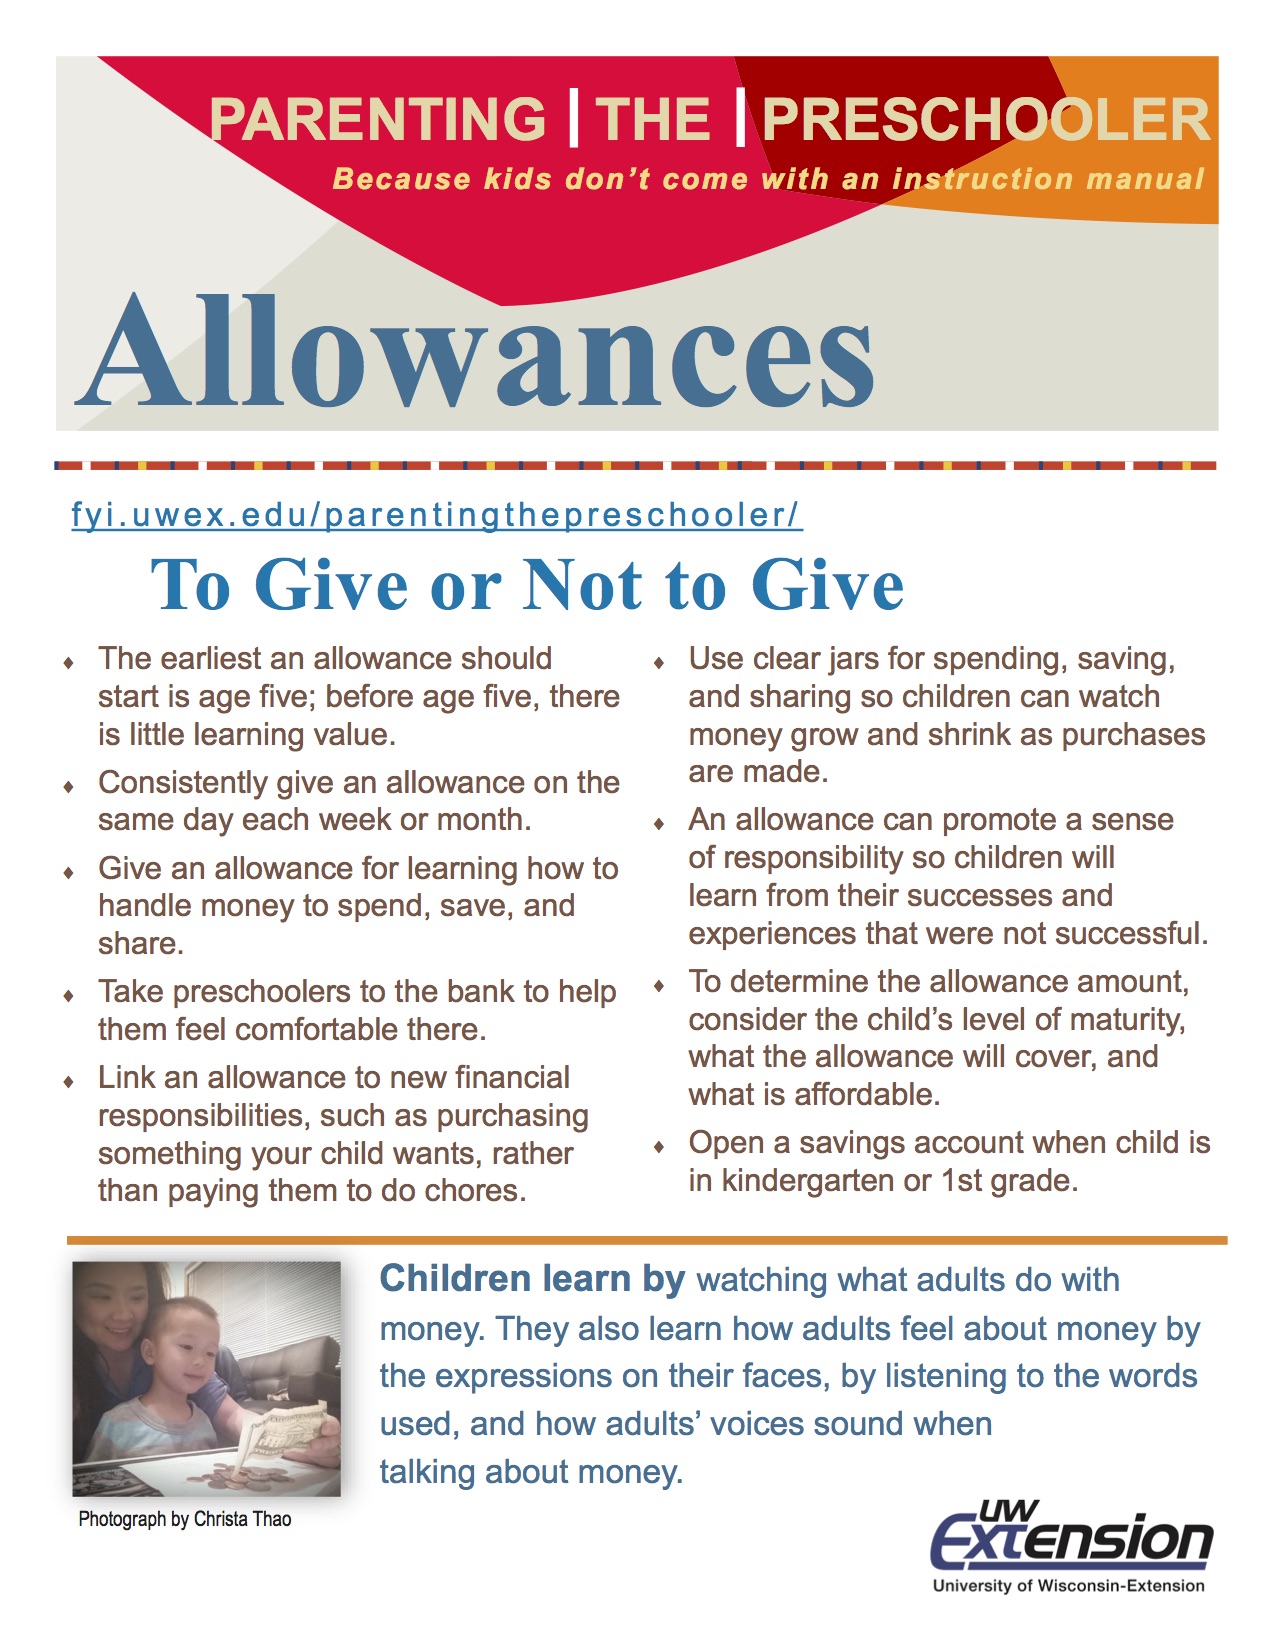 allowances-parenting-the-preschooler